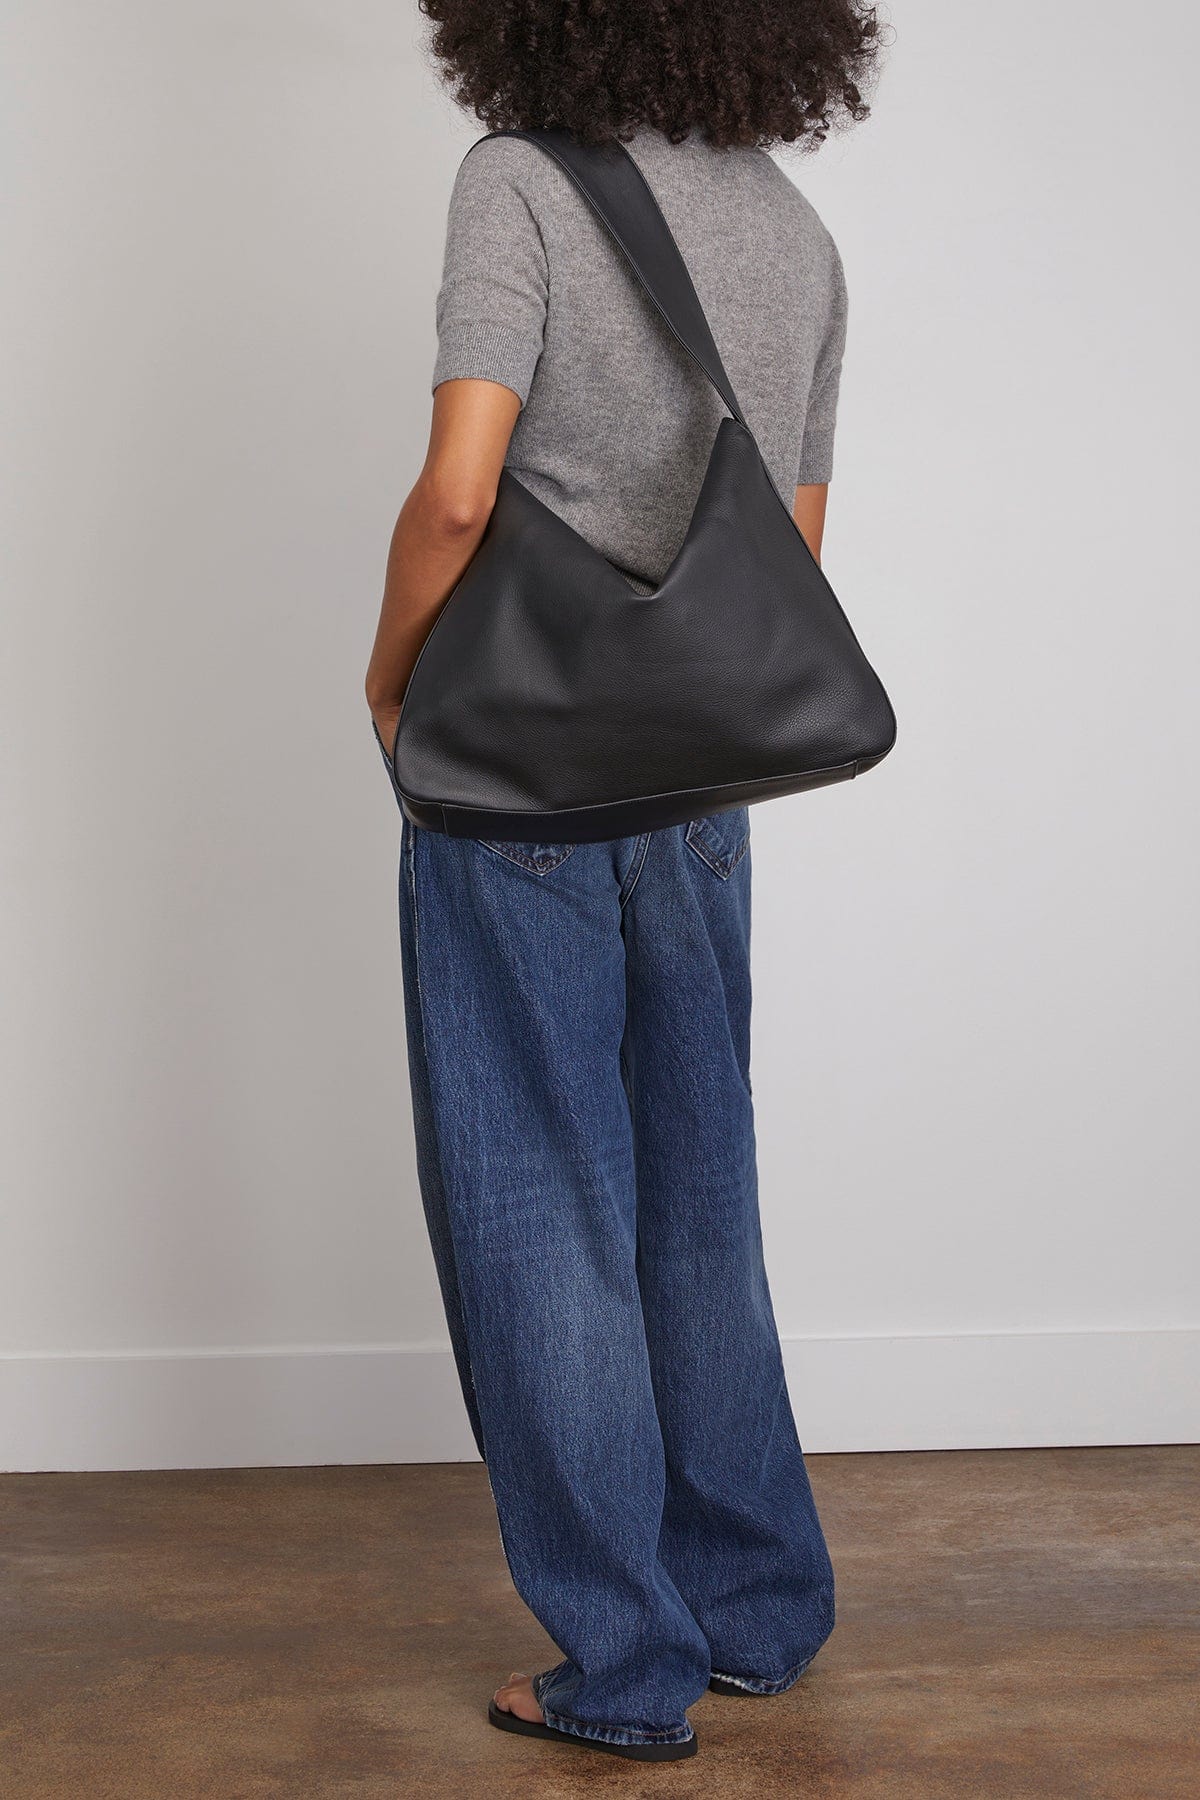 Khaite Shoulder Bags Elena Large Shoulder Bag in Black Khaite Elena Large Shoulder Bag in Black